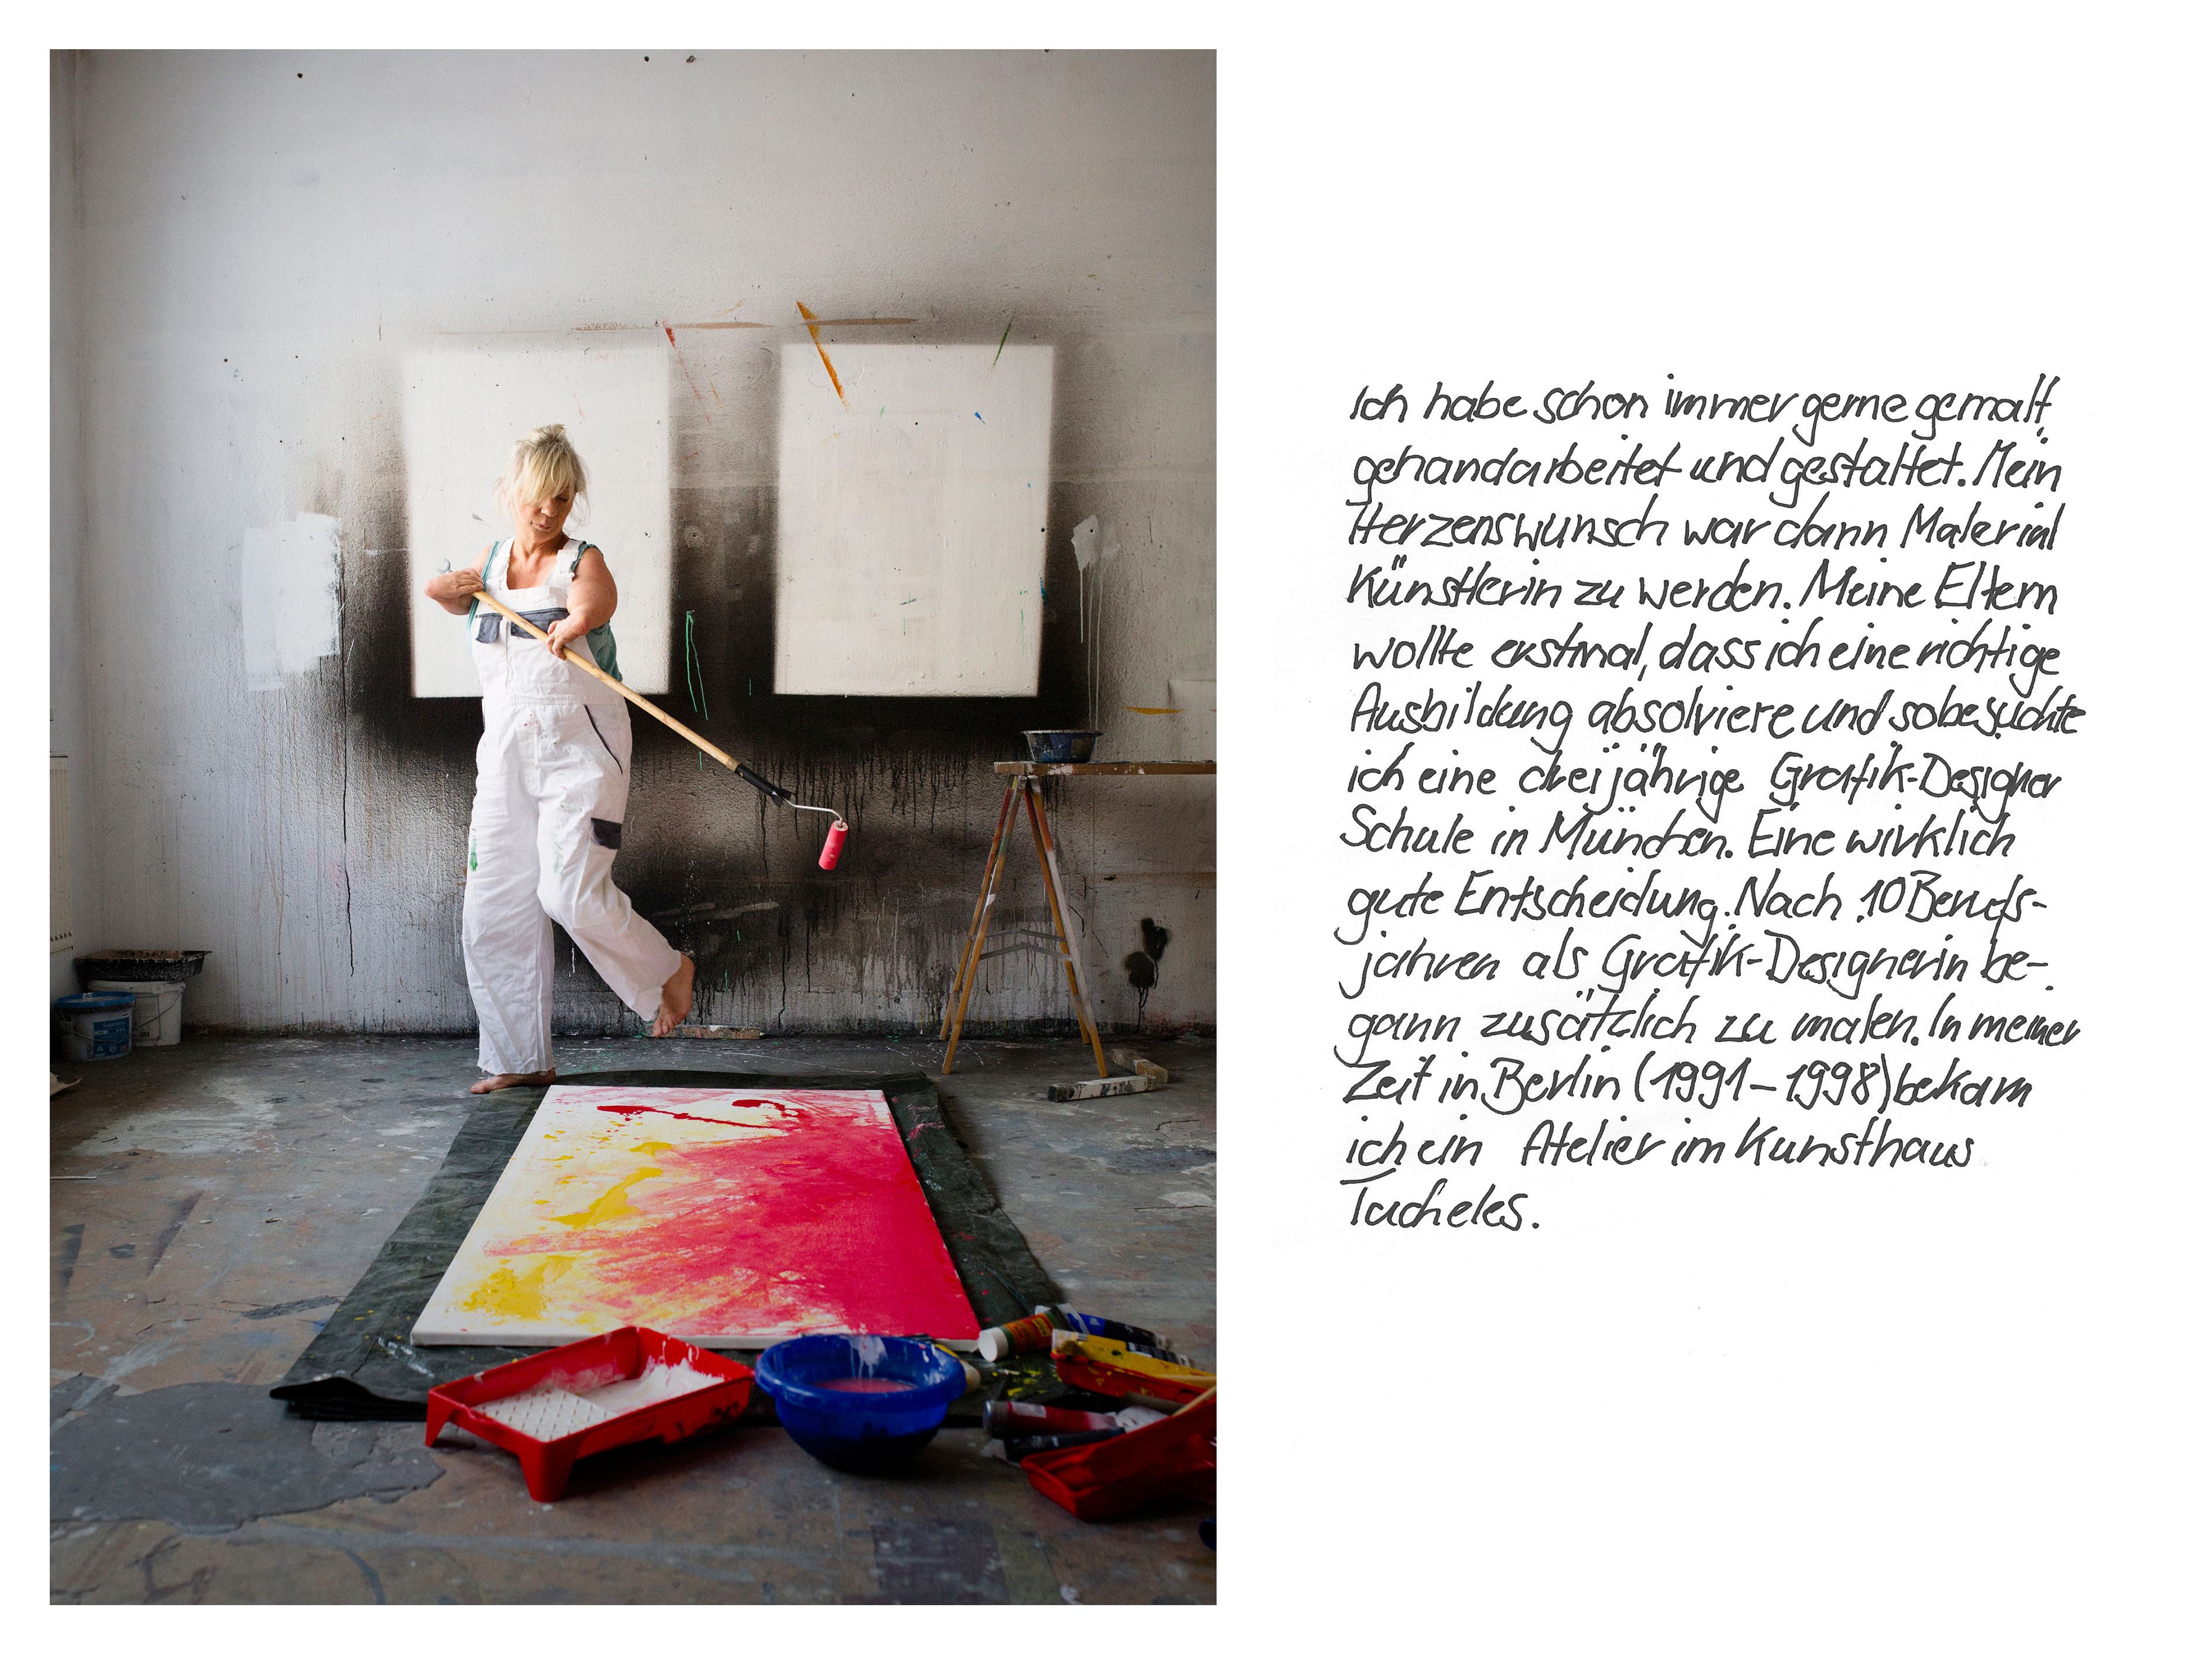 Eine Frau mit verkürzten Armen malt in einem Atelier. Neben dem Foto beschreibt die Künstlerin ihren beruflichen Werdegang.